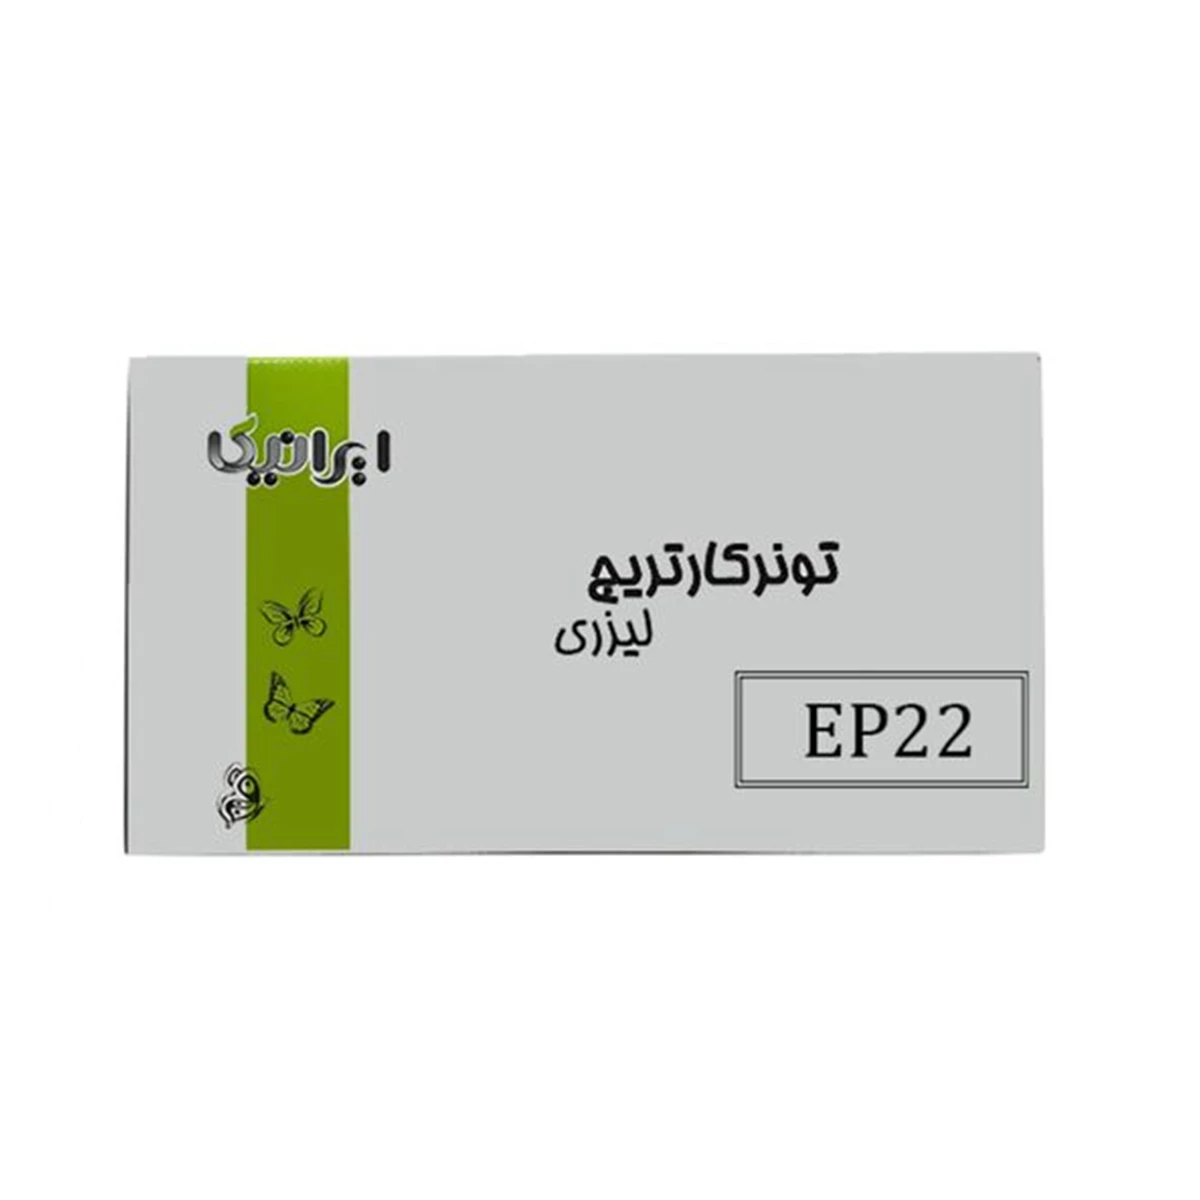 کارتریج ایرانیکا طرح کانن EP22  مشکی